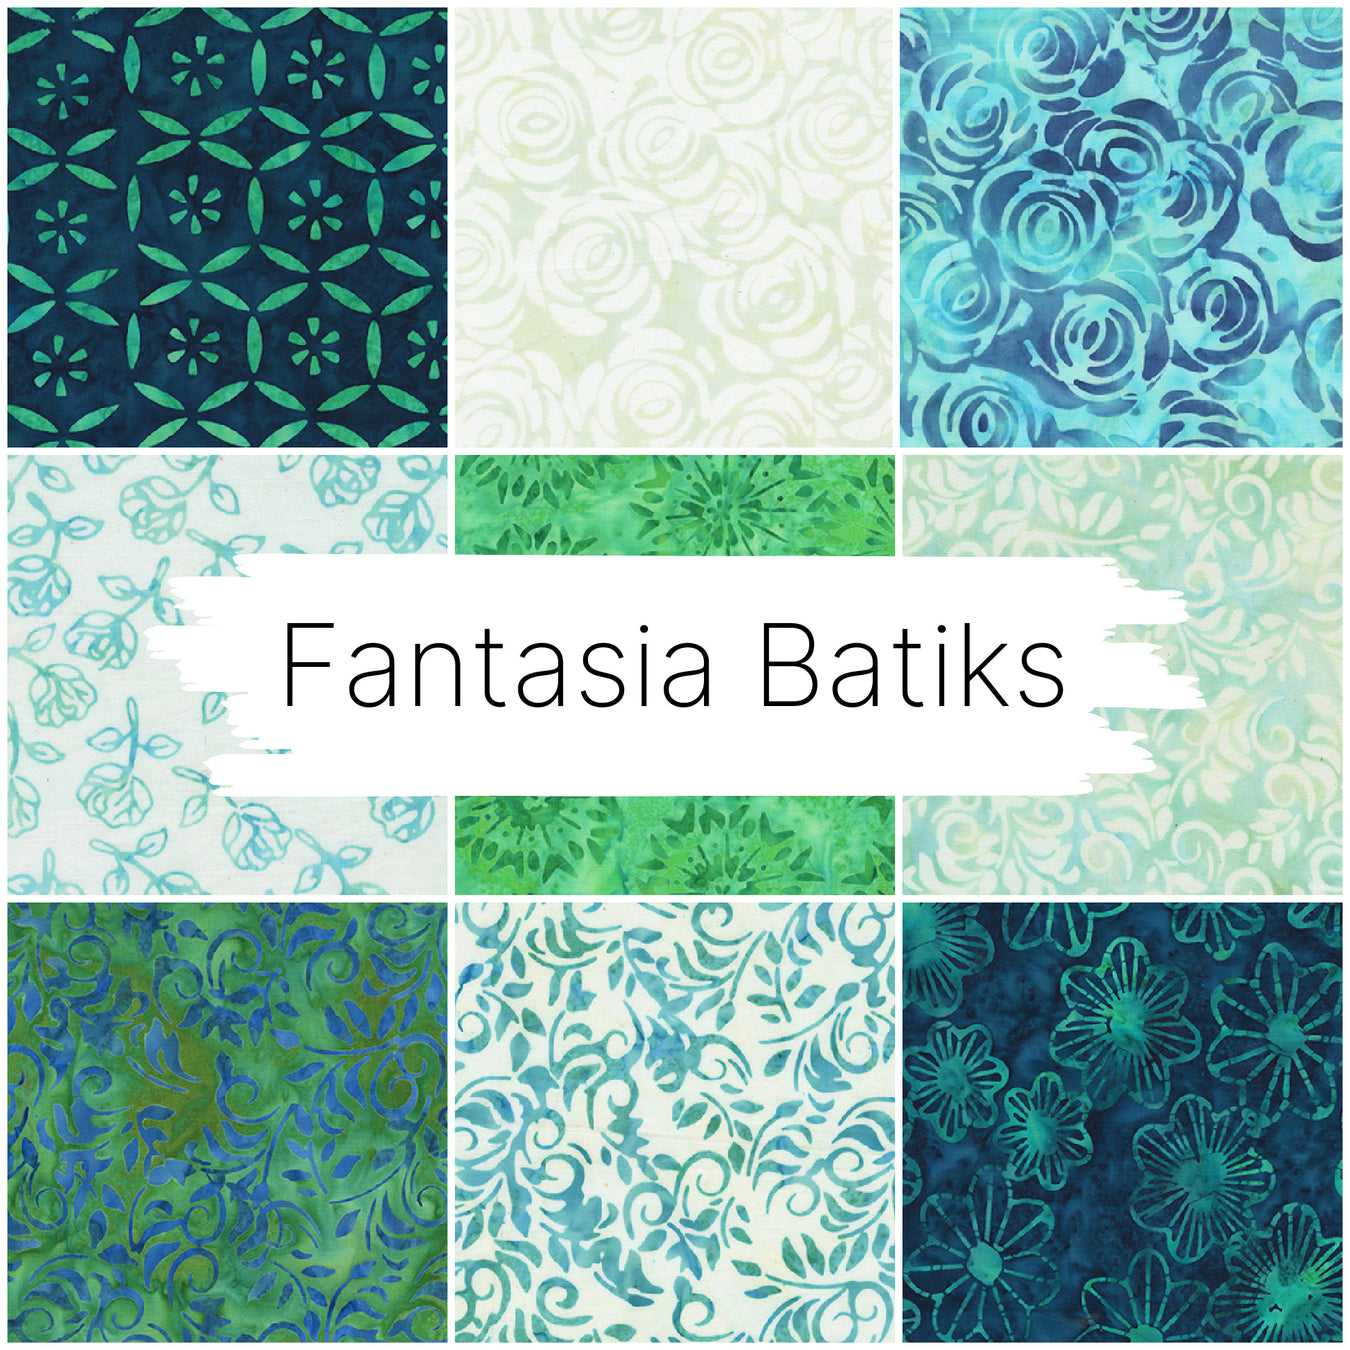 Fantasia Batiks